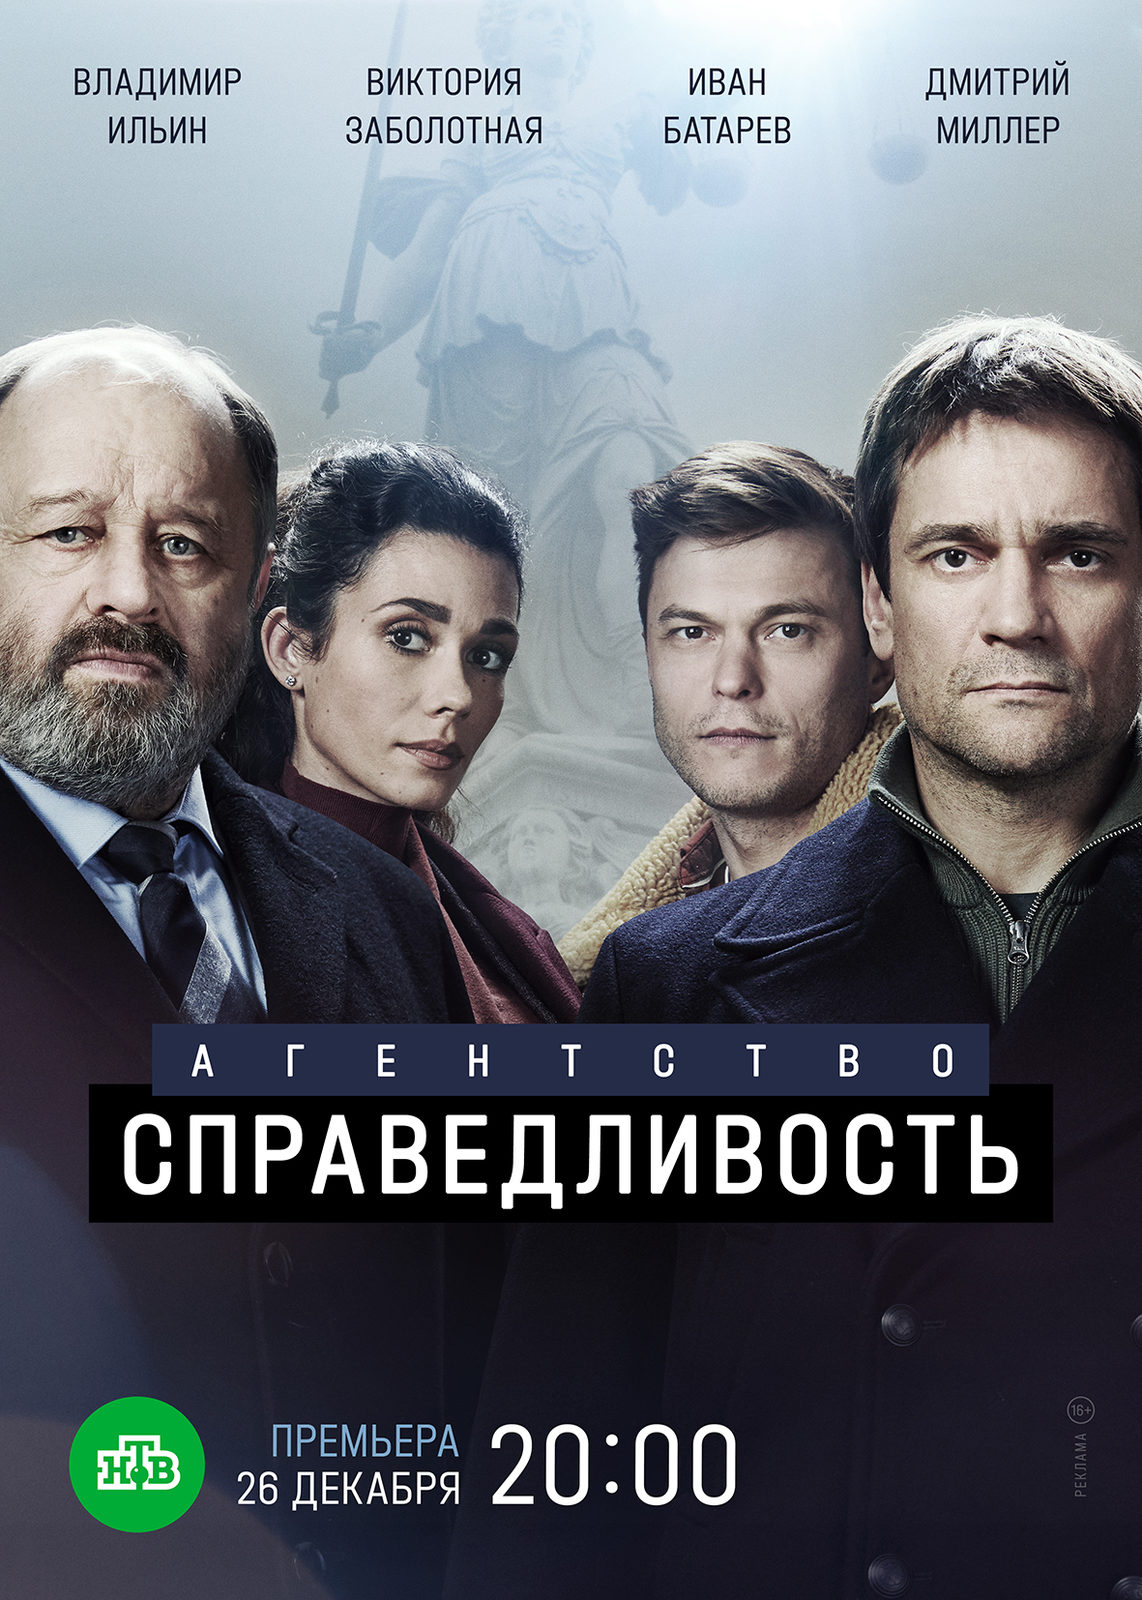 «Агентство Справедливость» с Владимиром Ильиным приступит к работе 26 декабря